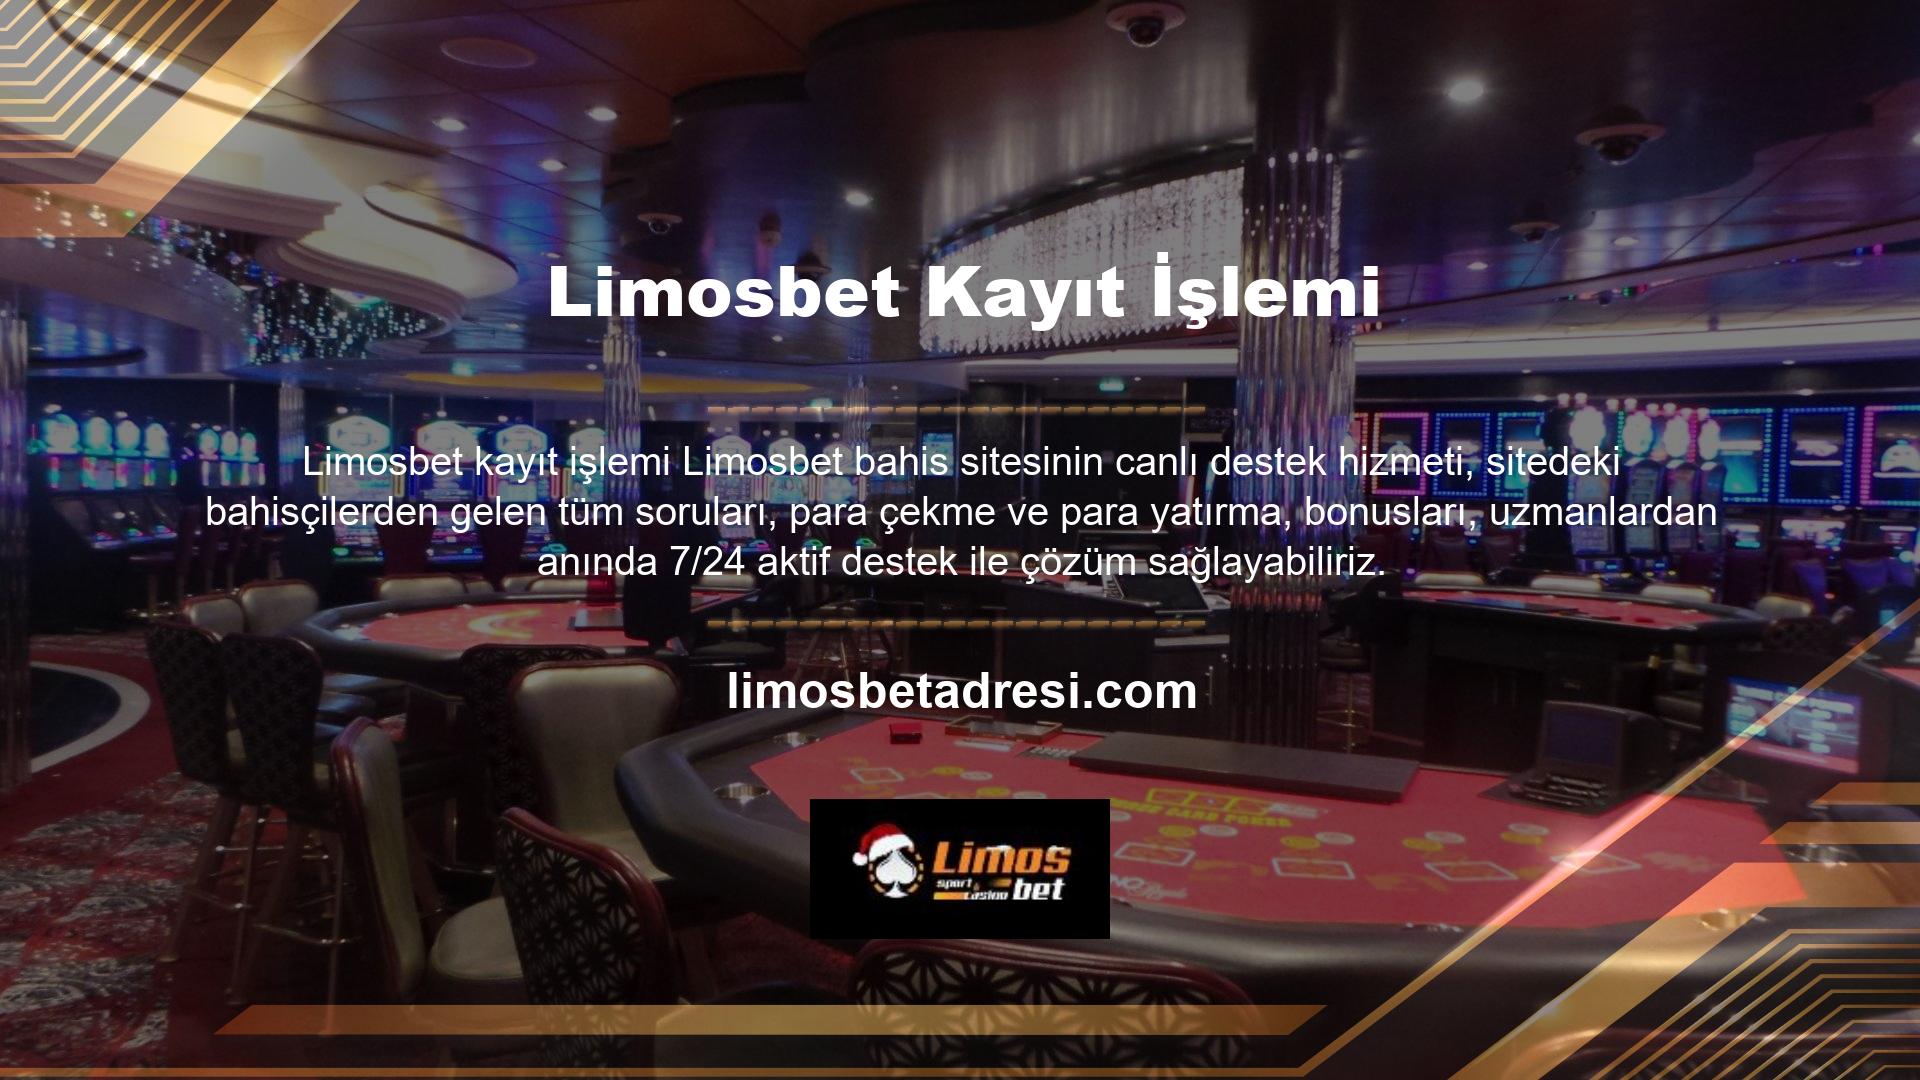 Lisanslı bir site olan Limosbet bahis oynayarak hem eğlenebilir hem de para kazanabilirsiniz